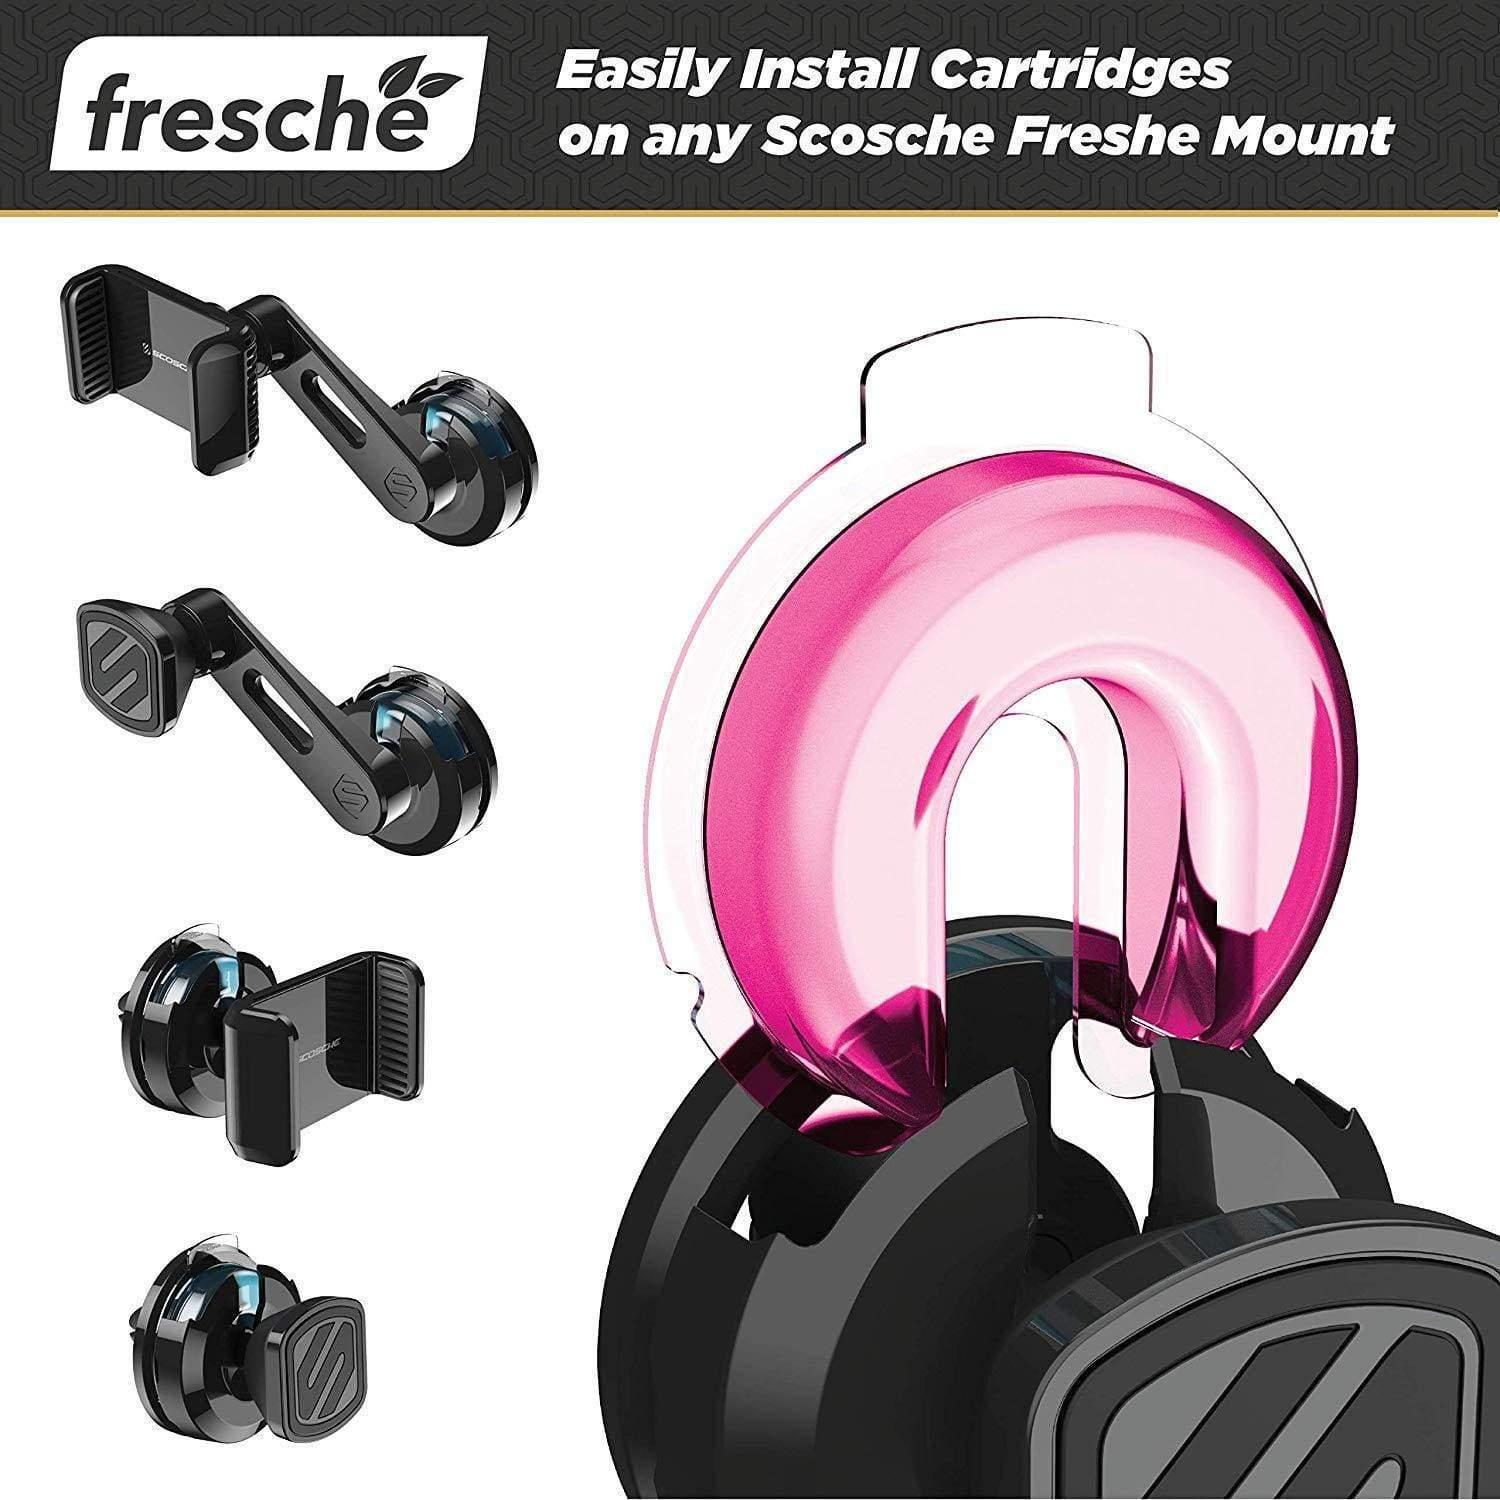 جهاز معطر الهواء لحامل الهاتف Scosche - Air Freshener Refill Cartridges for Fresche Mounts - استوائي - cG9zdDo1ODI3OA==